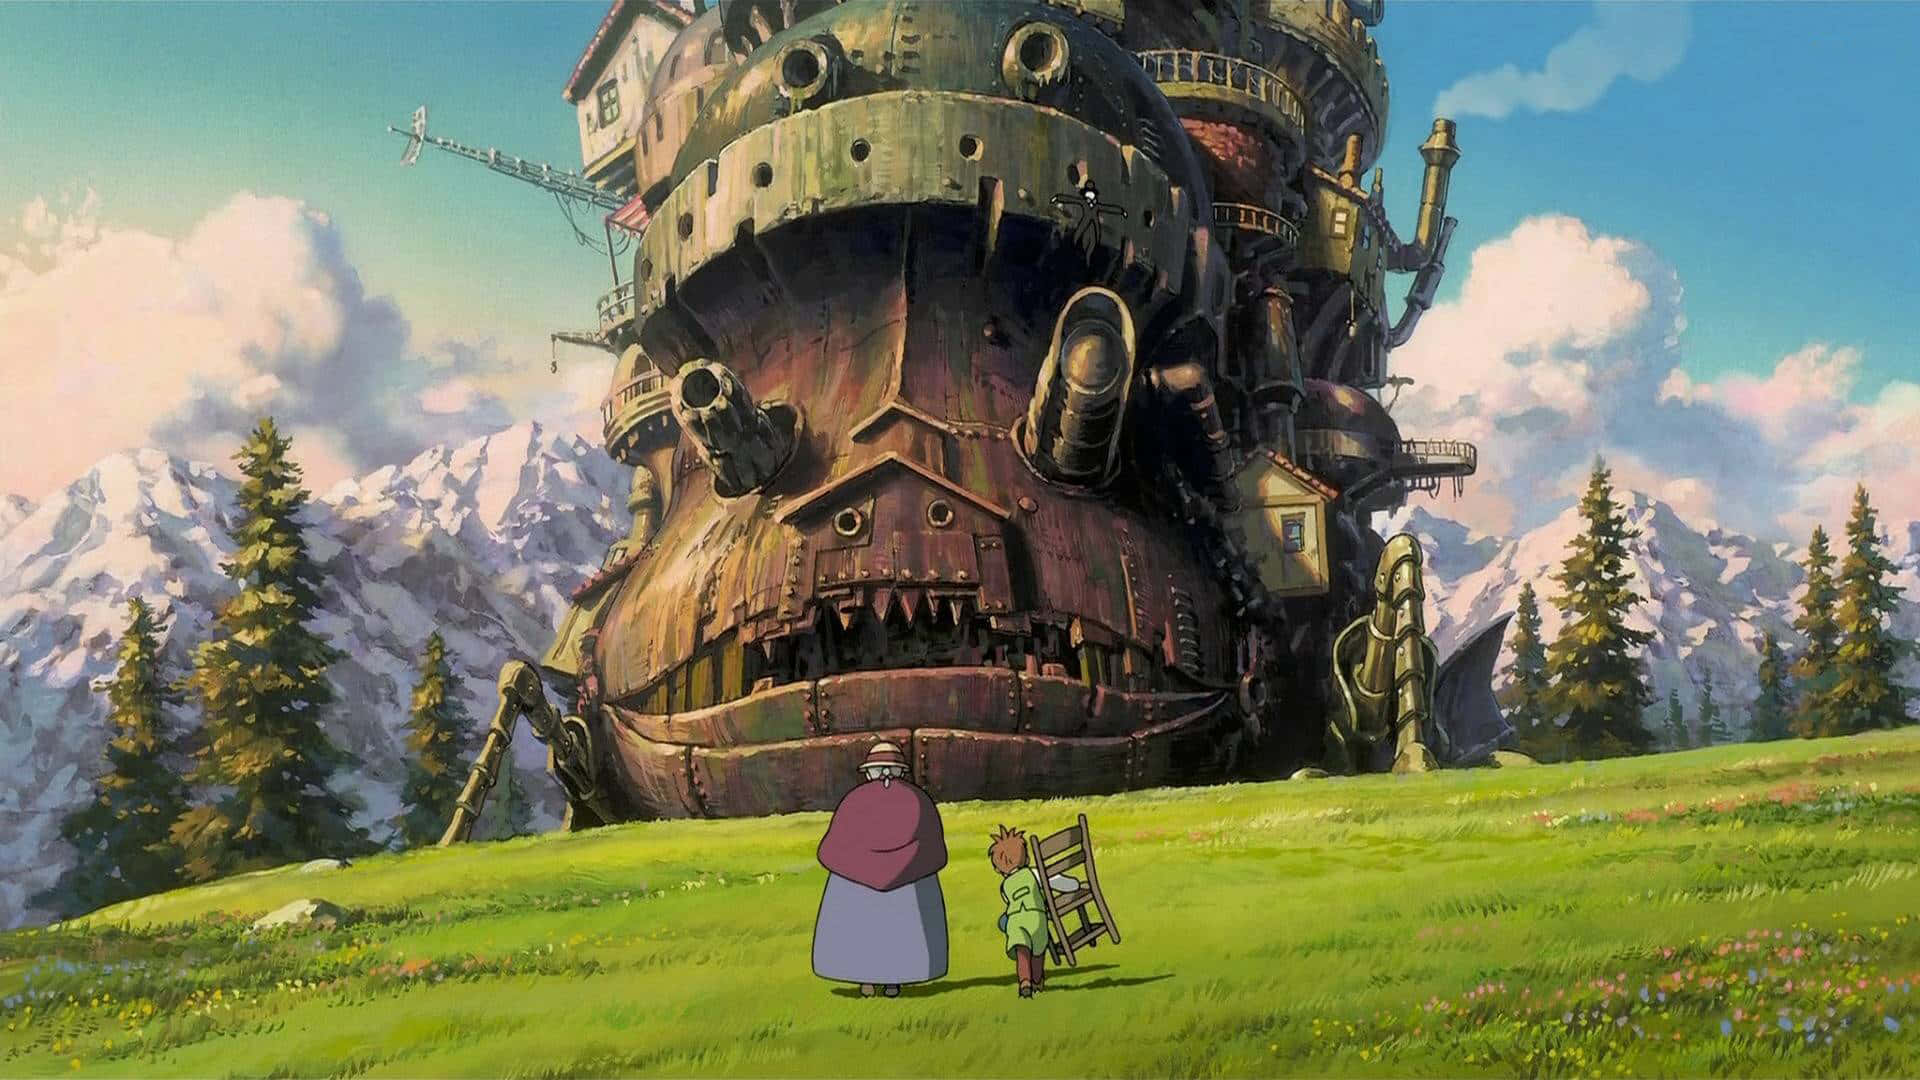 Aventurallena De Espíritu En El Encantador Mundo De Studio Ghibli